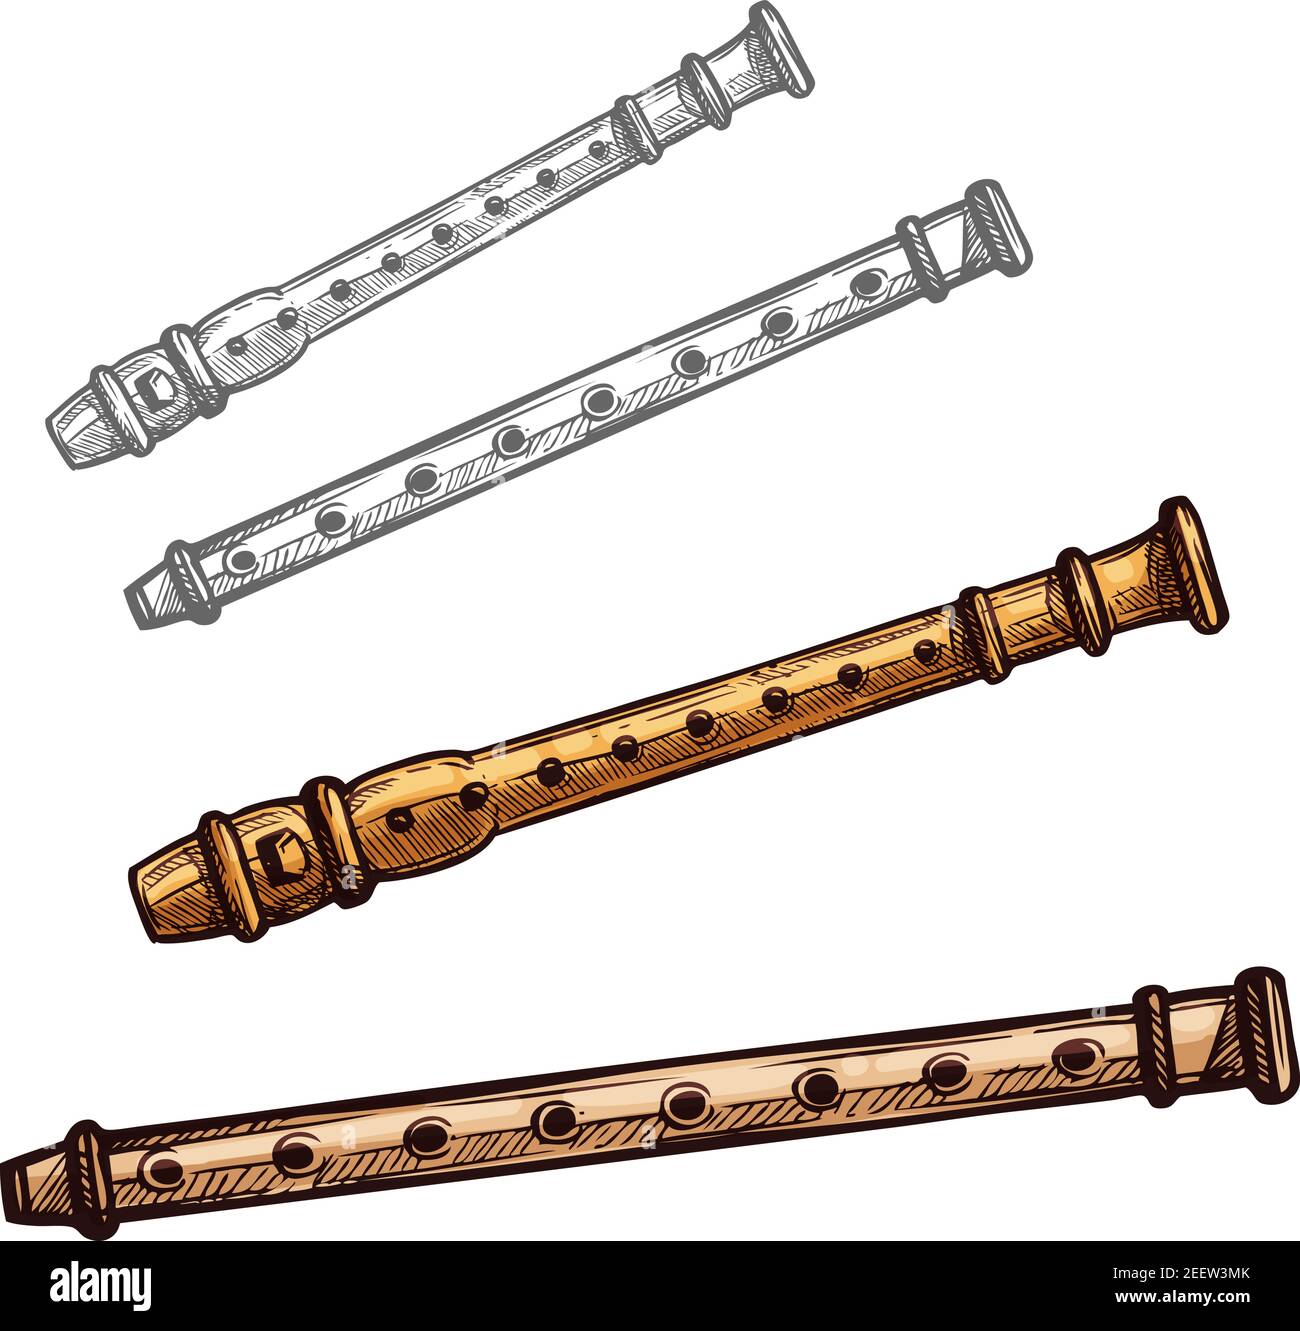 Flöte Musikinstrument isolierte Skizze. Holzflöte oder Bambusrohr Folk Wind  Musikinstrument für ethnische Musik Konzert, Art Festival Design  Stock-Vektorgrafik - Alamy